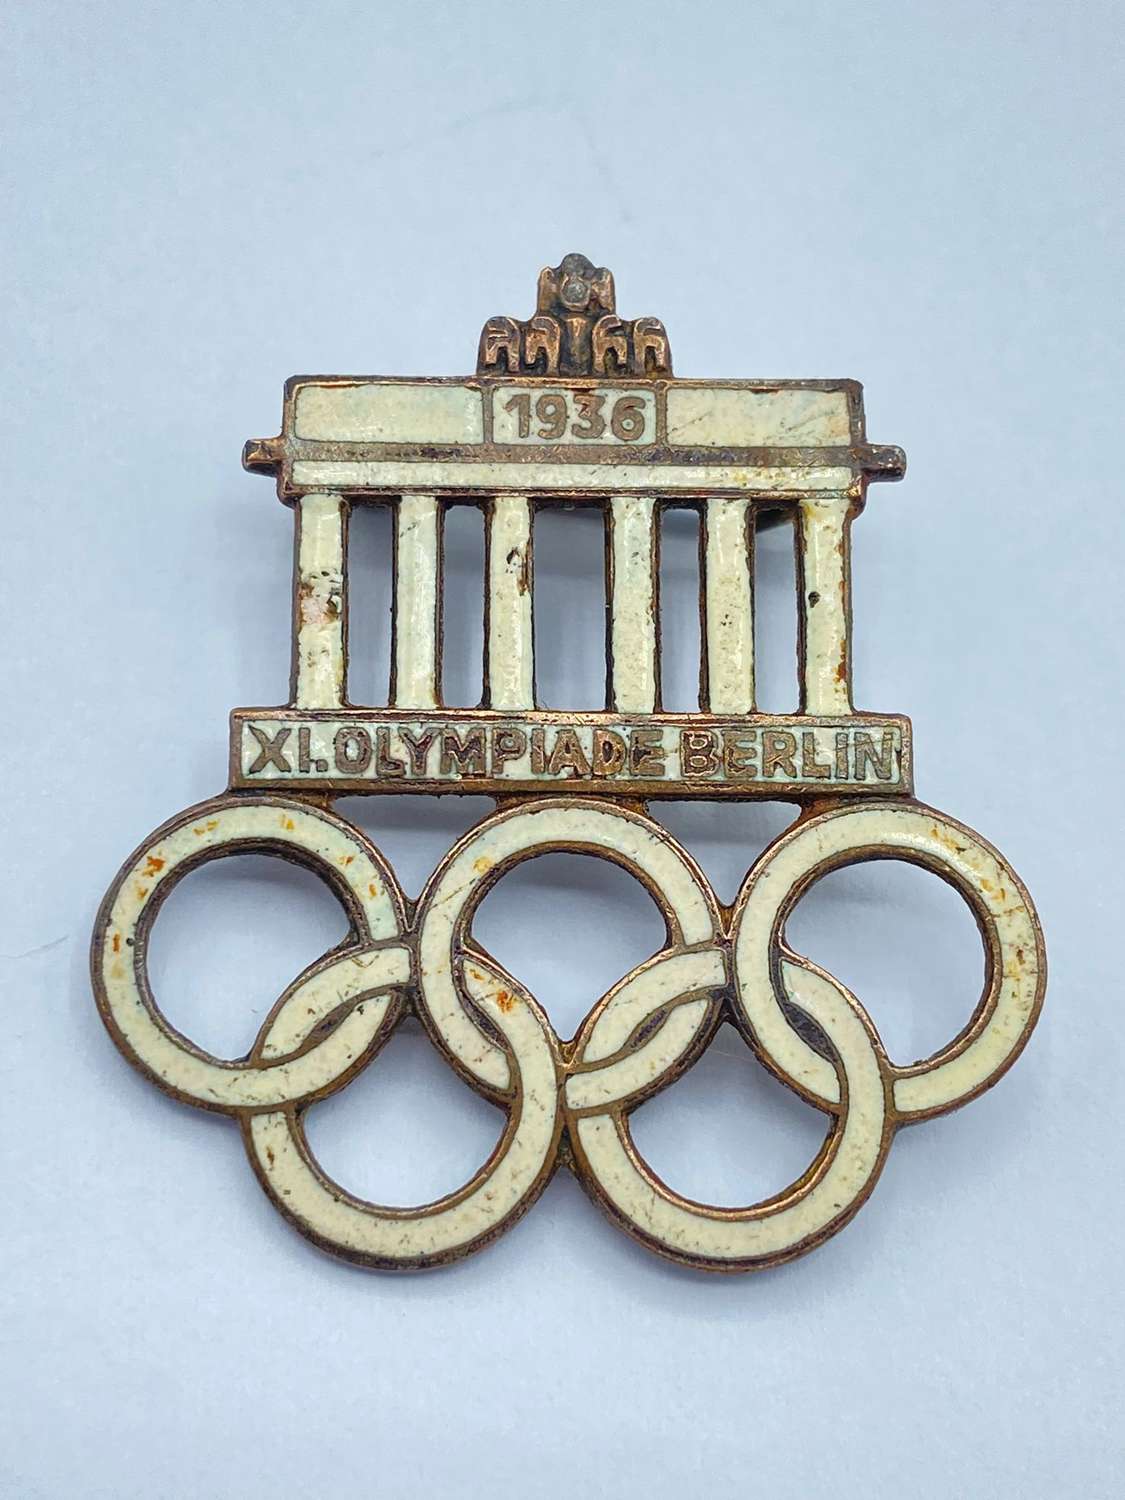 Pre WW2 German 1936 Olympics Berlin Enamel Badge Maker Marked DH